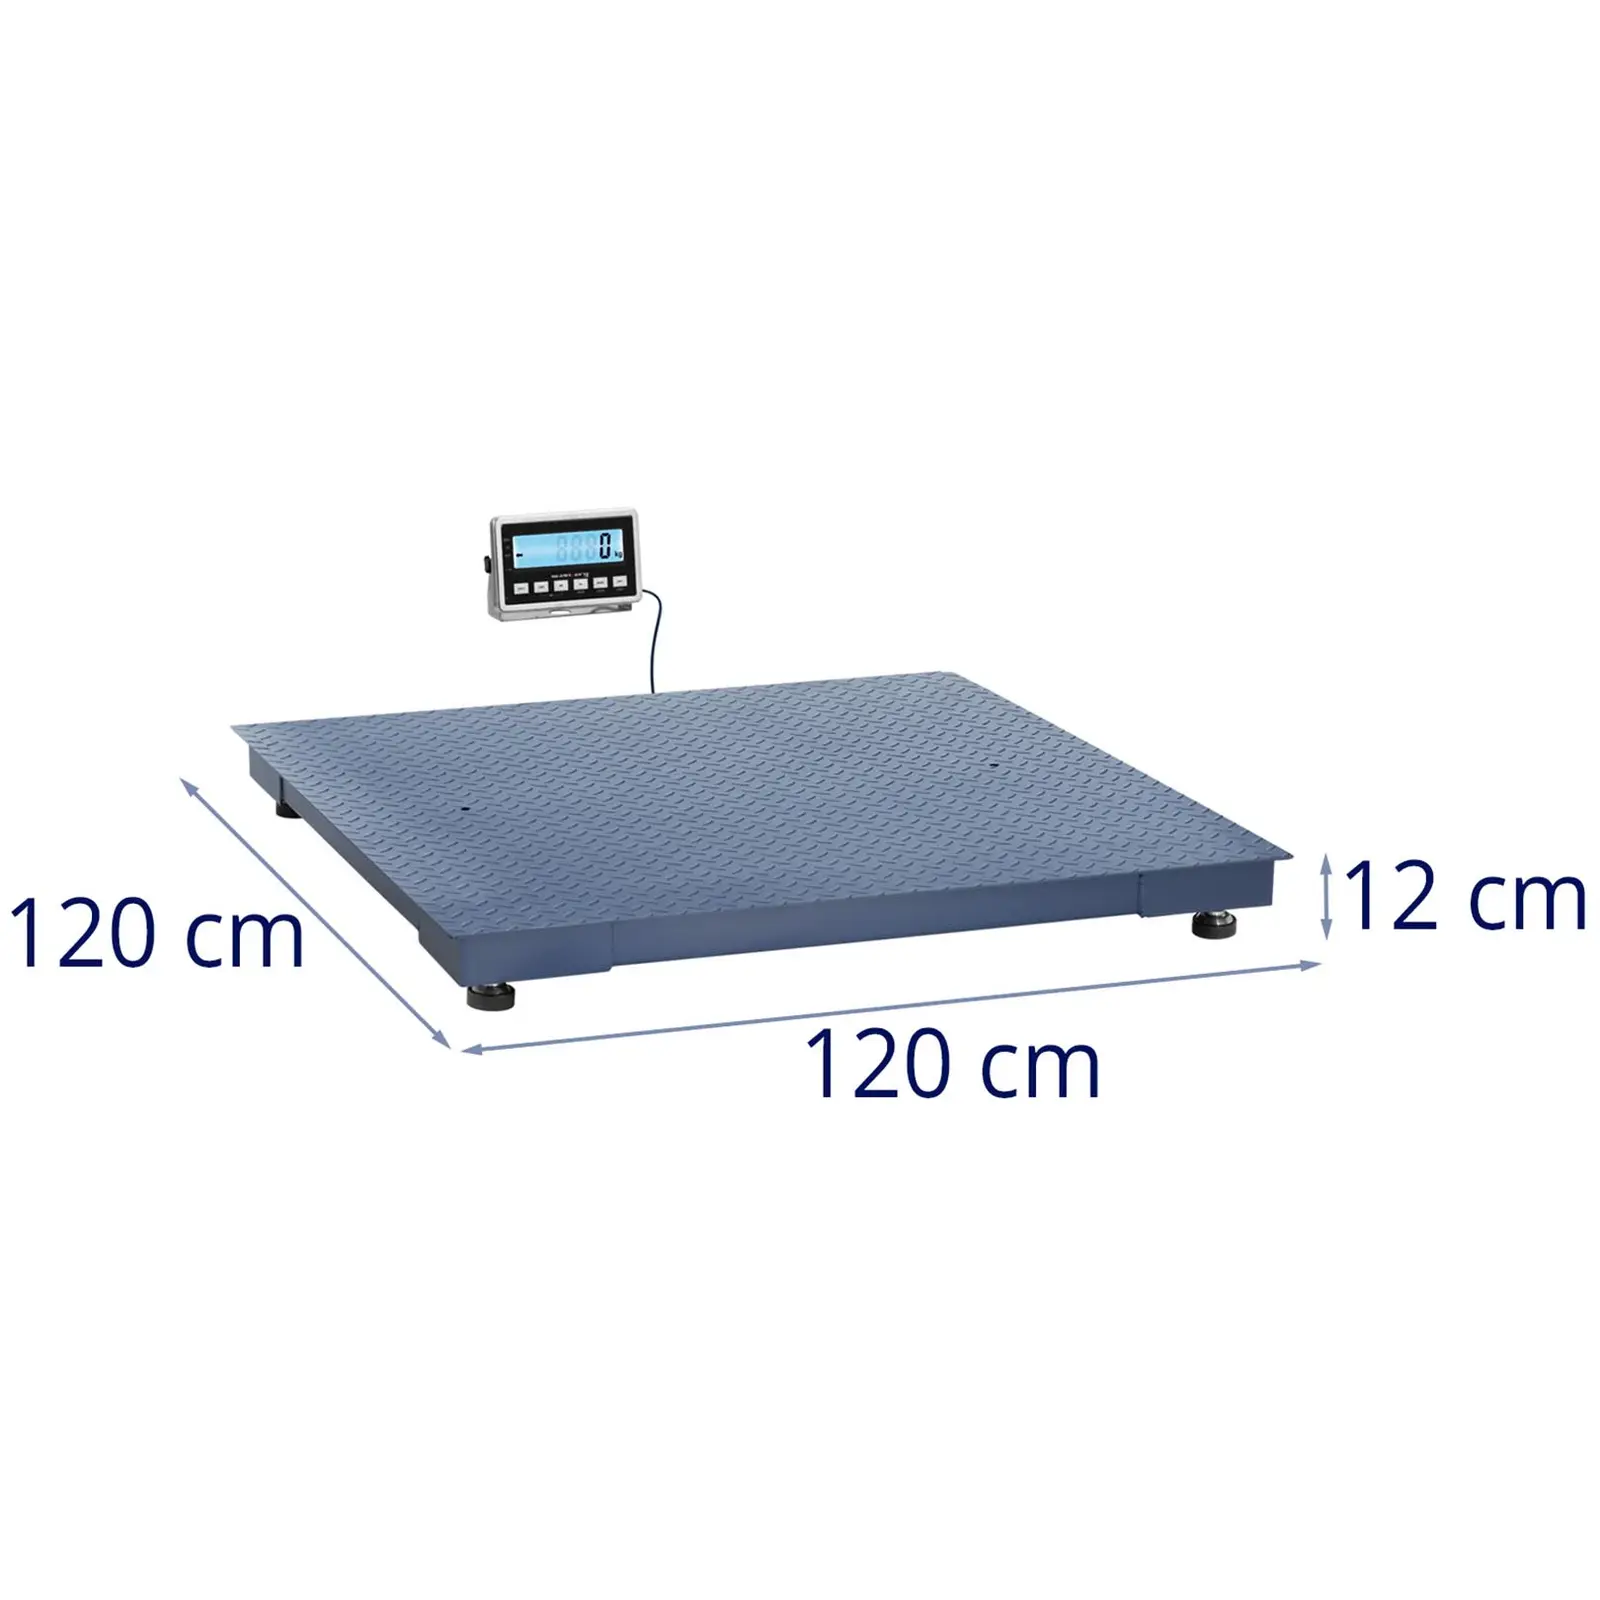 Bilancia da pavimento - 1000 kg / 0,2 kg - 1200 x 1200 mm - LCD